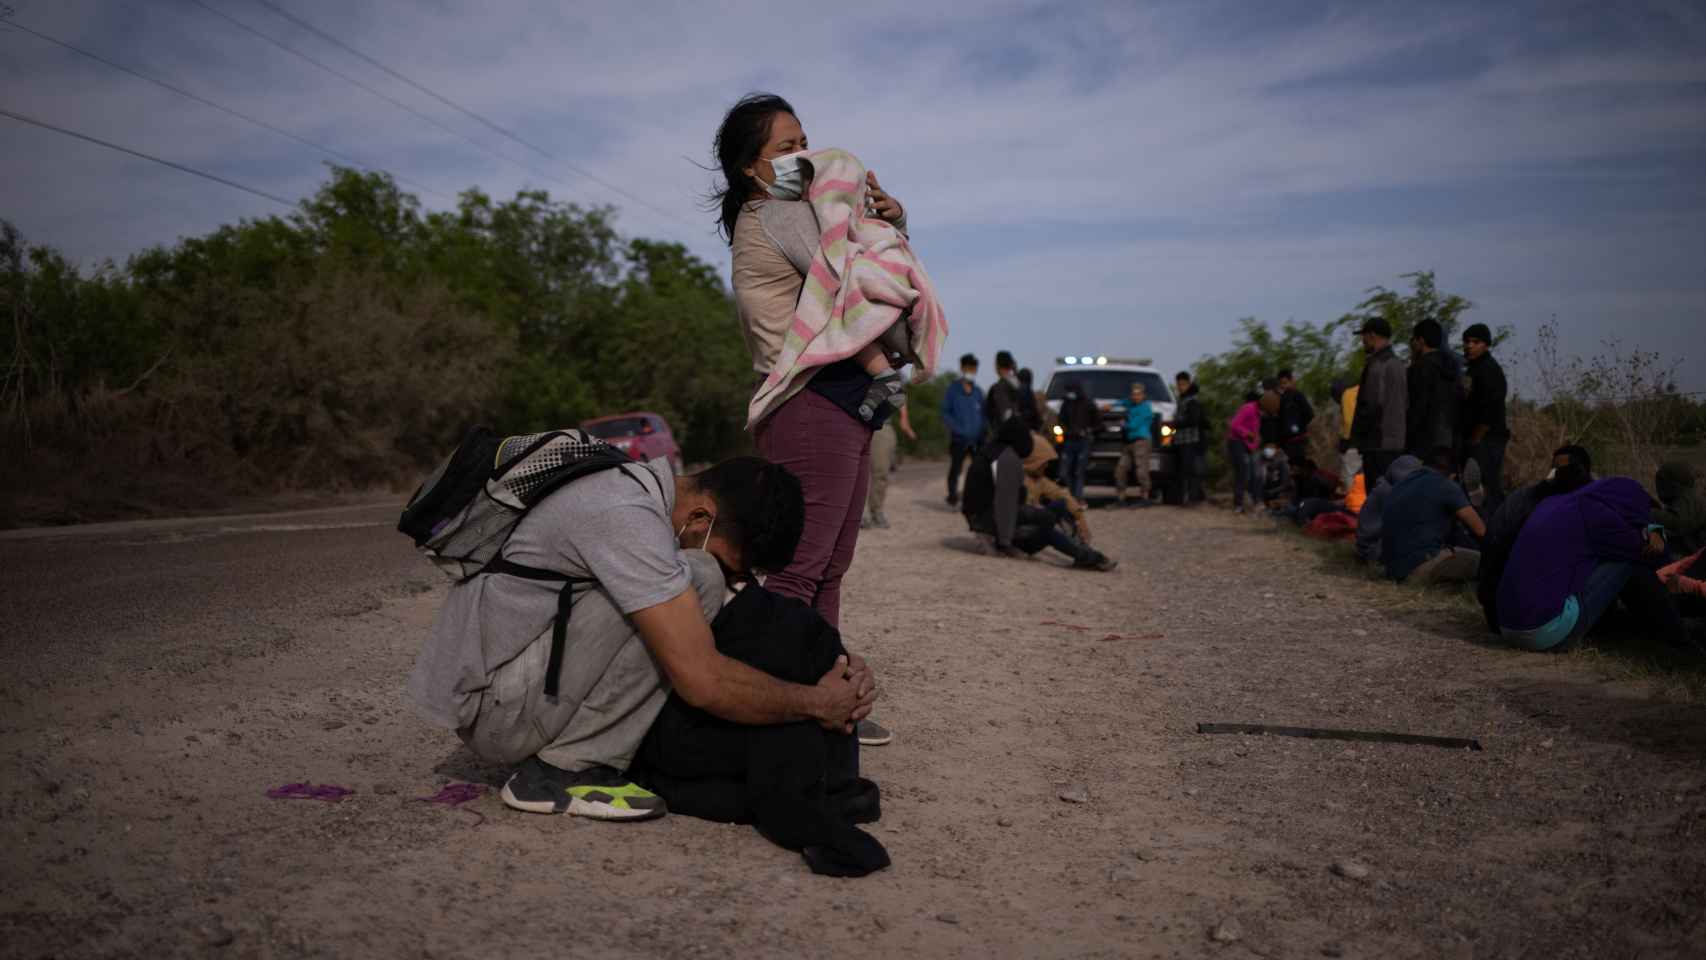 Una familia migrante tras cruzar el Rio Grande.